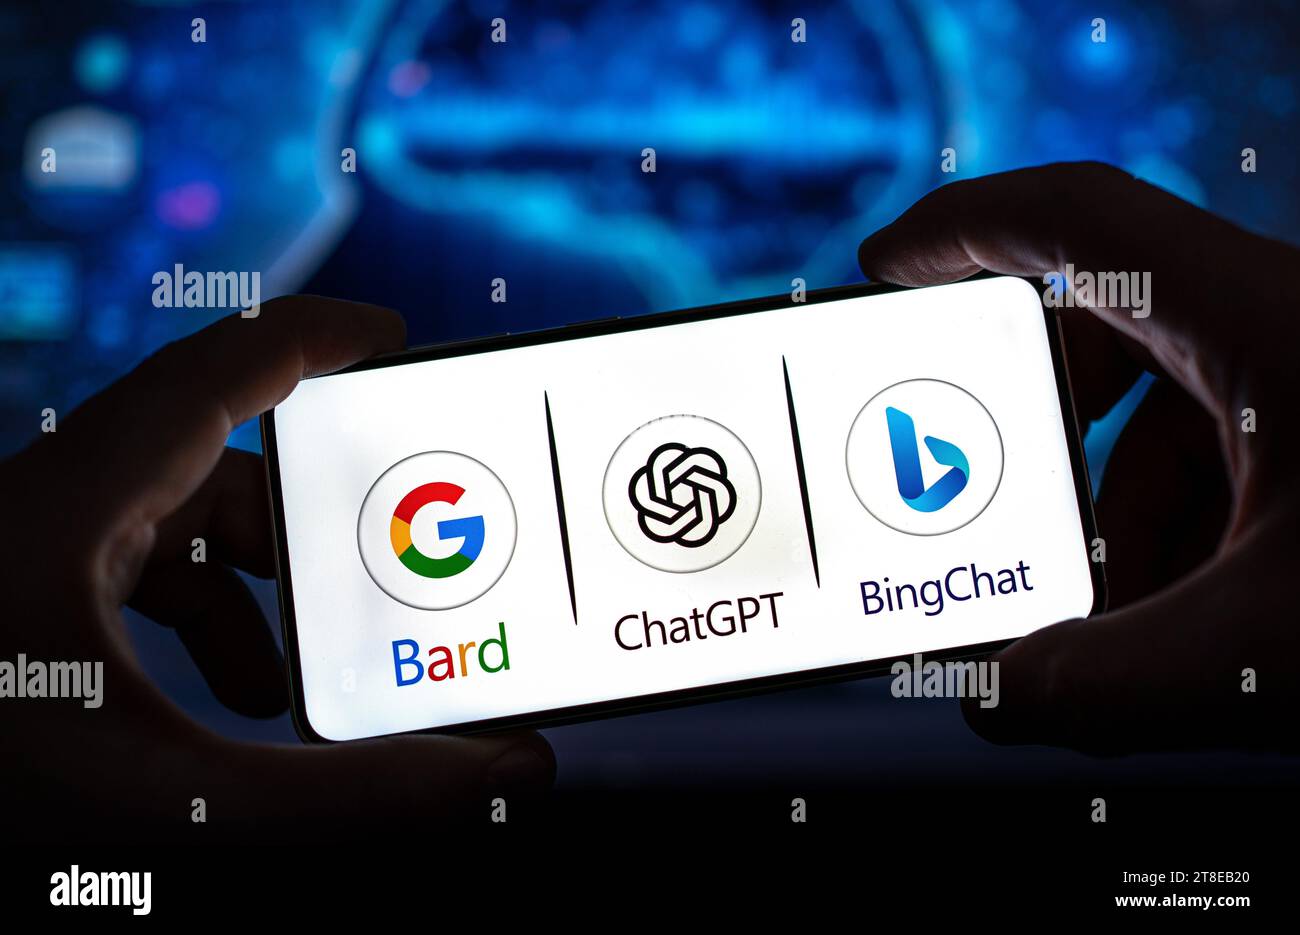 Google Bard VS ChatGPT VS Bing Chat affiché sur l'appareil mobile Banque D'Images